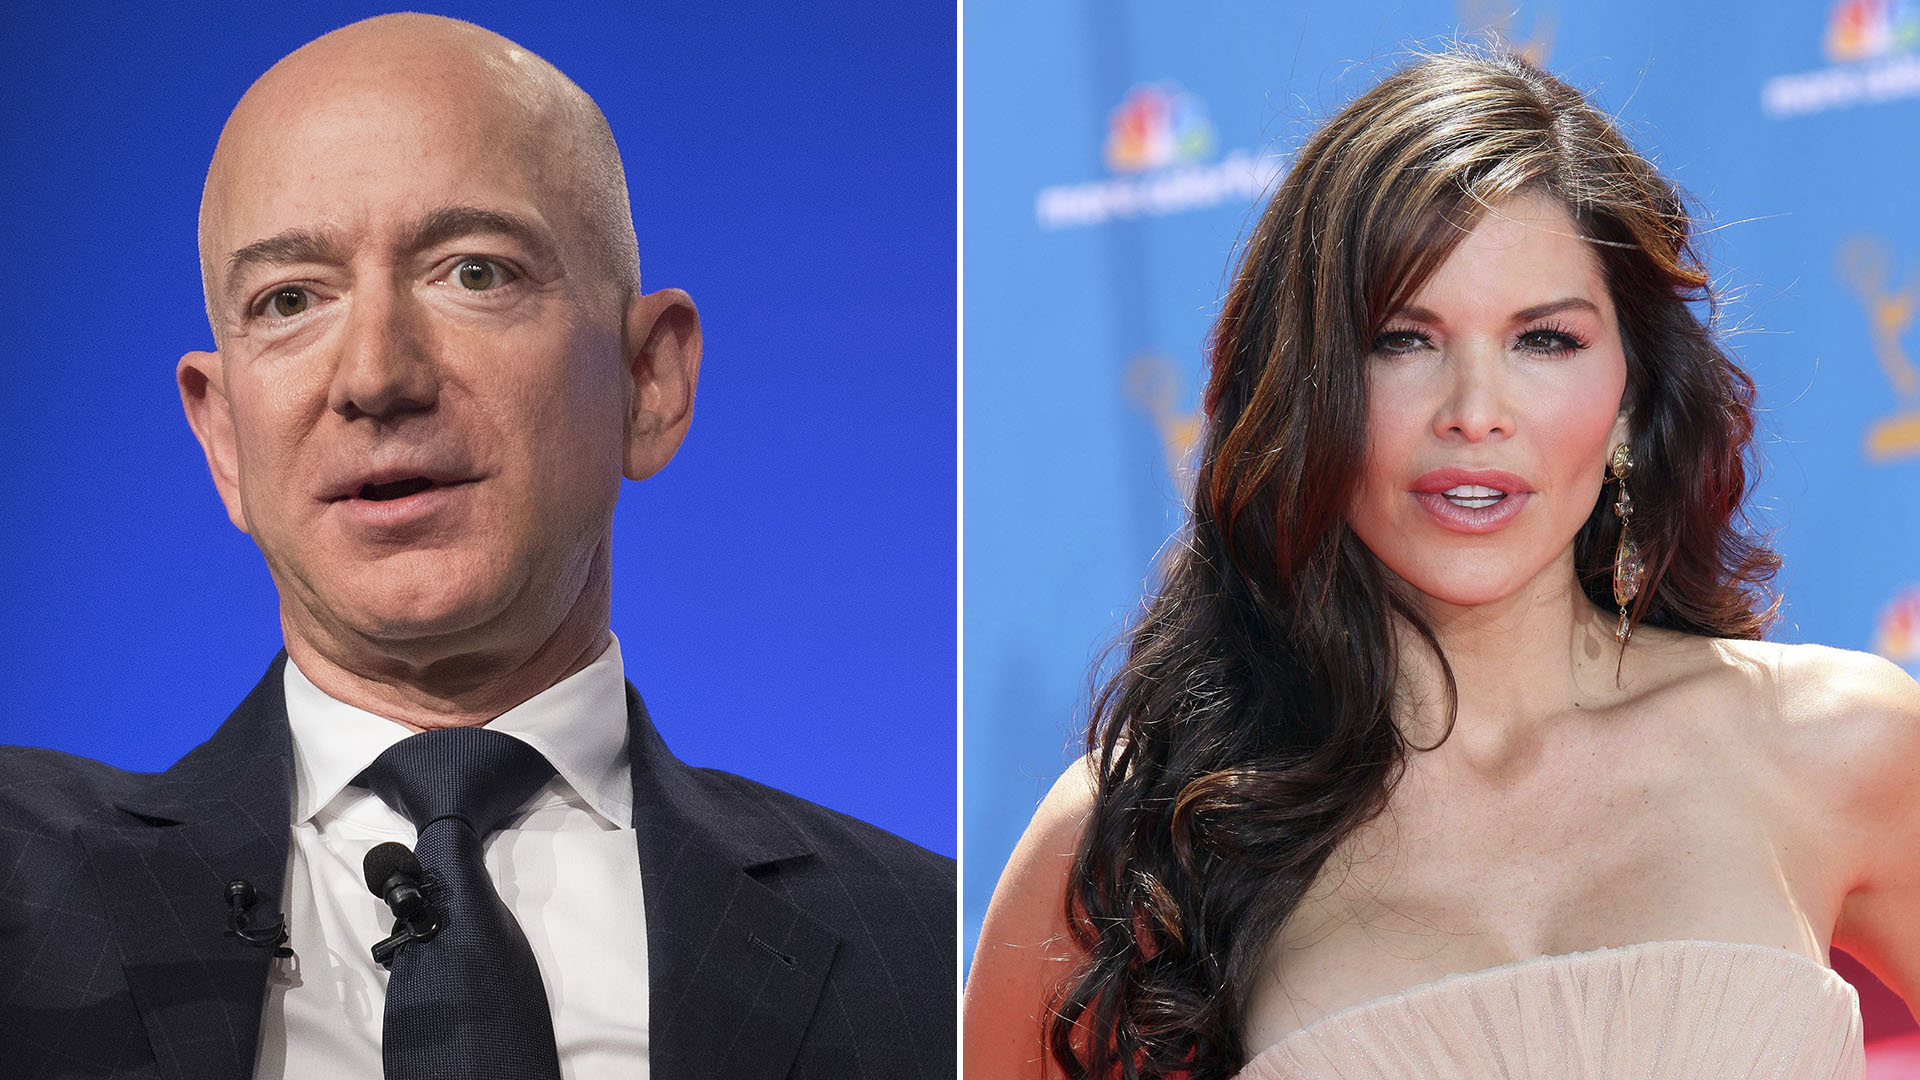 La presentadora de noticias y de programas del espectáculo Lauren Sanchez también se acaba de separar de su pareja y es la nueva novia de Jeff Bezos